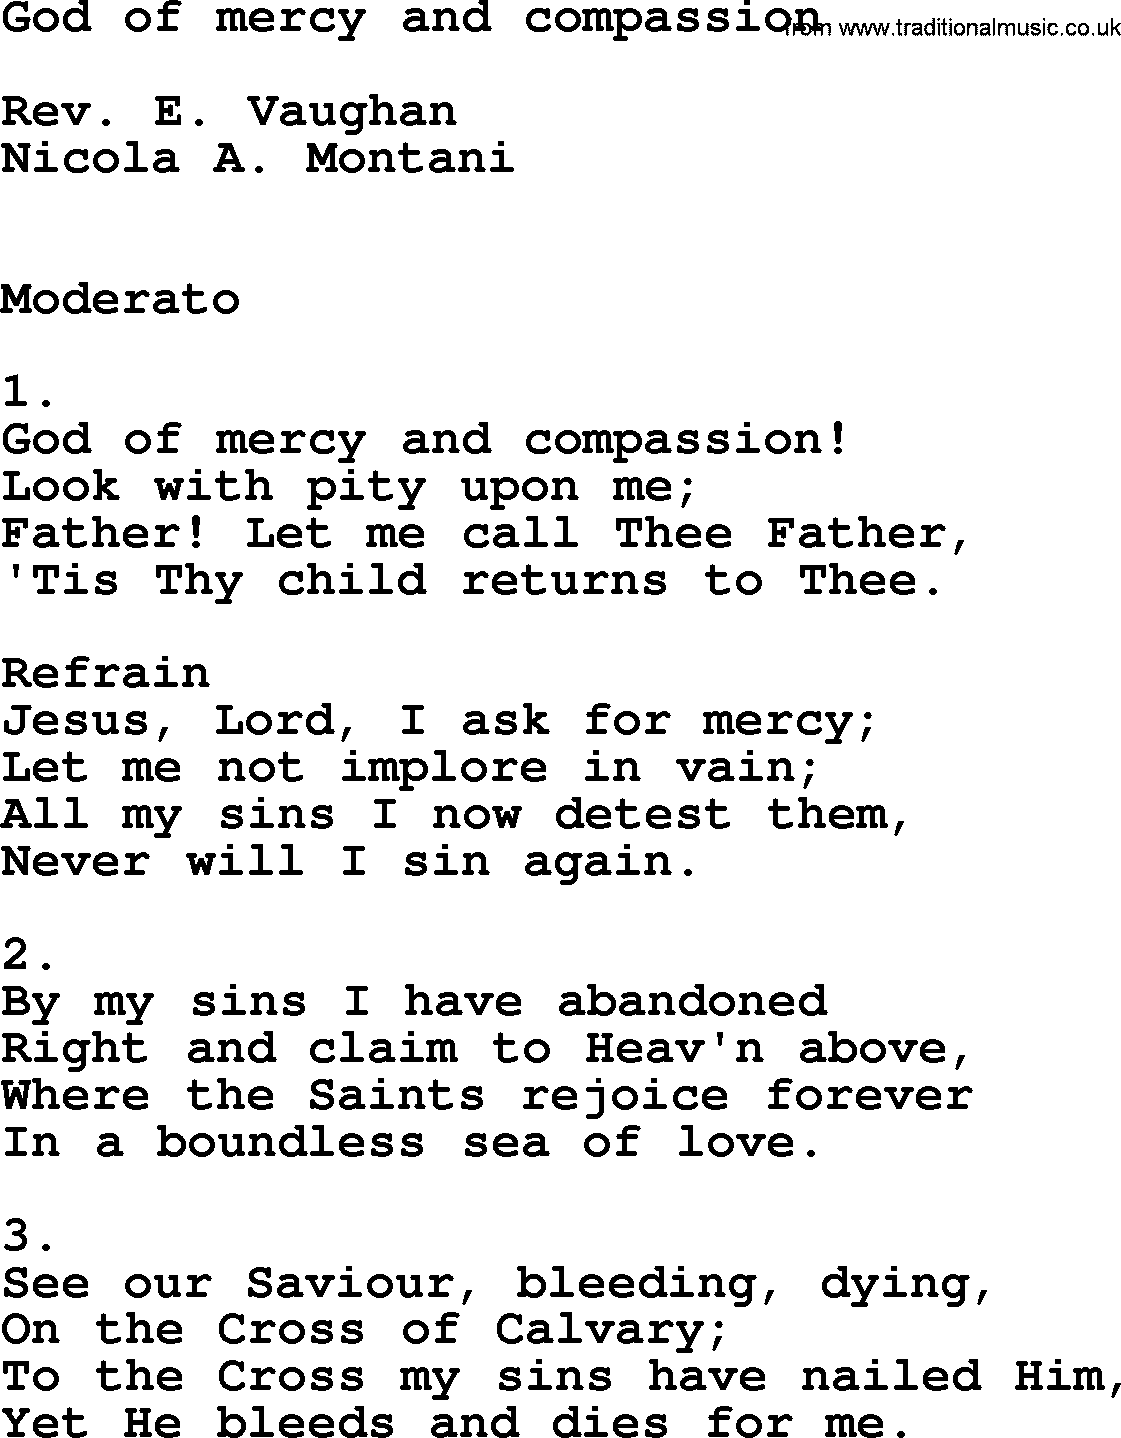 Catholic Hymn: God Of Mercy And Compassion lyrics with PDF